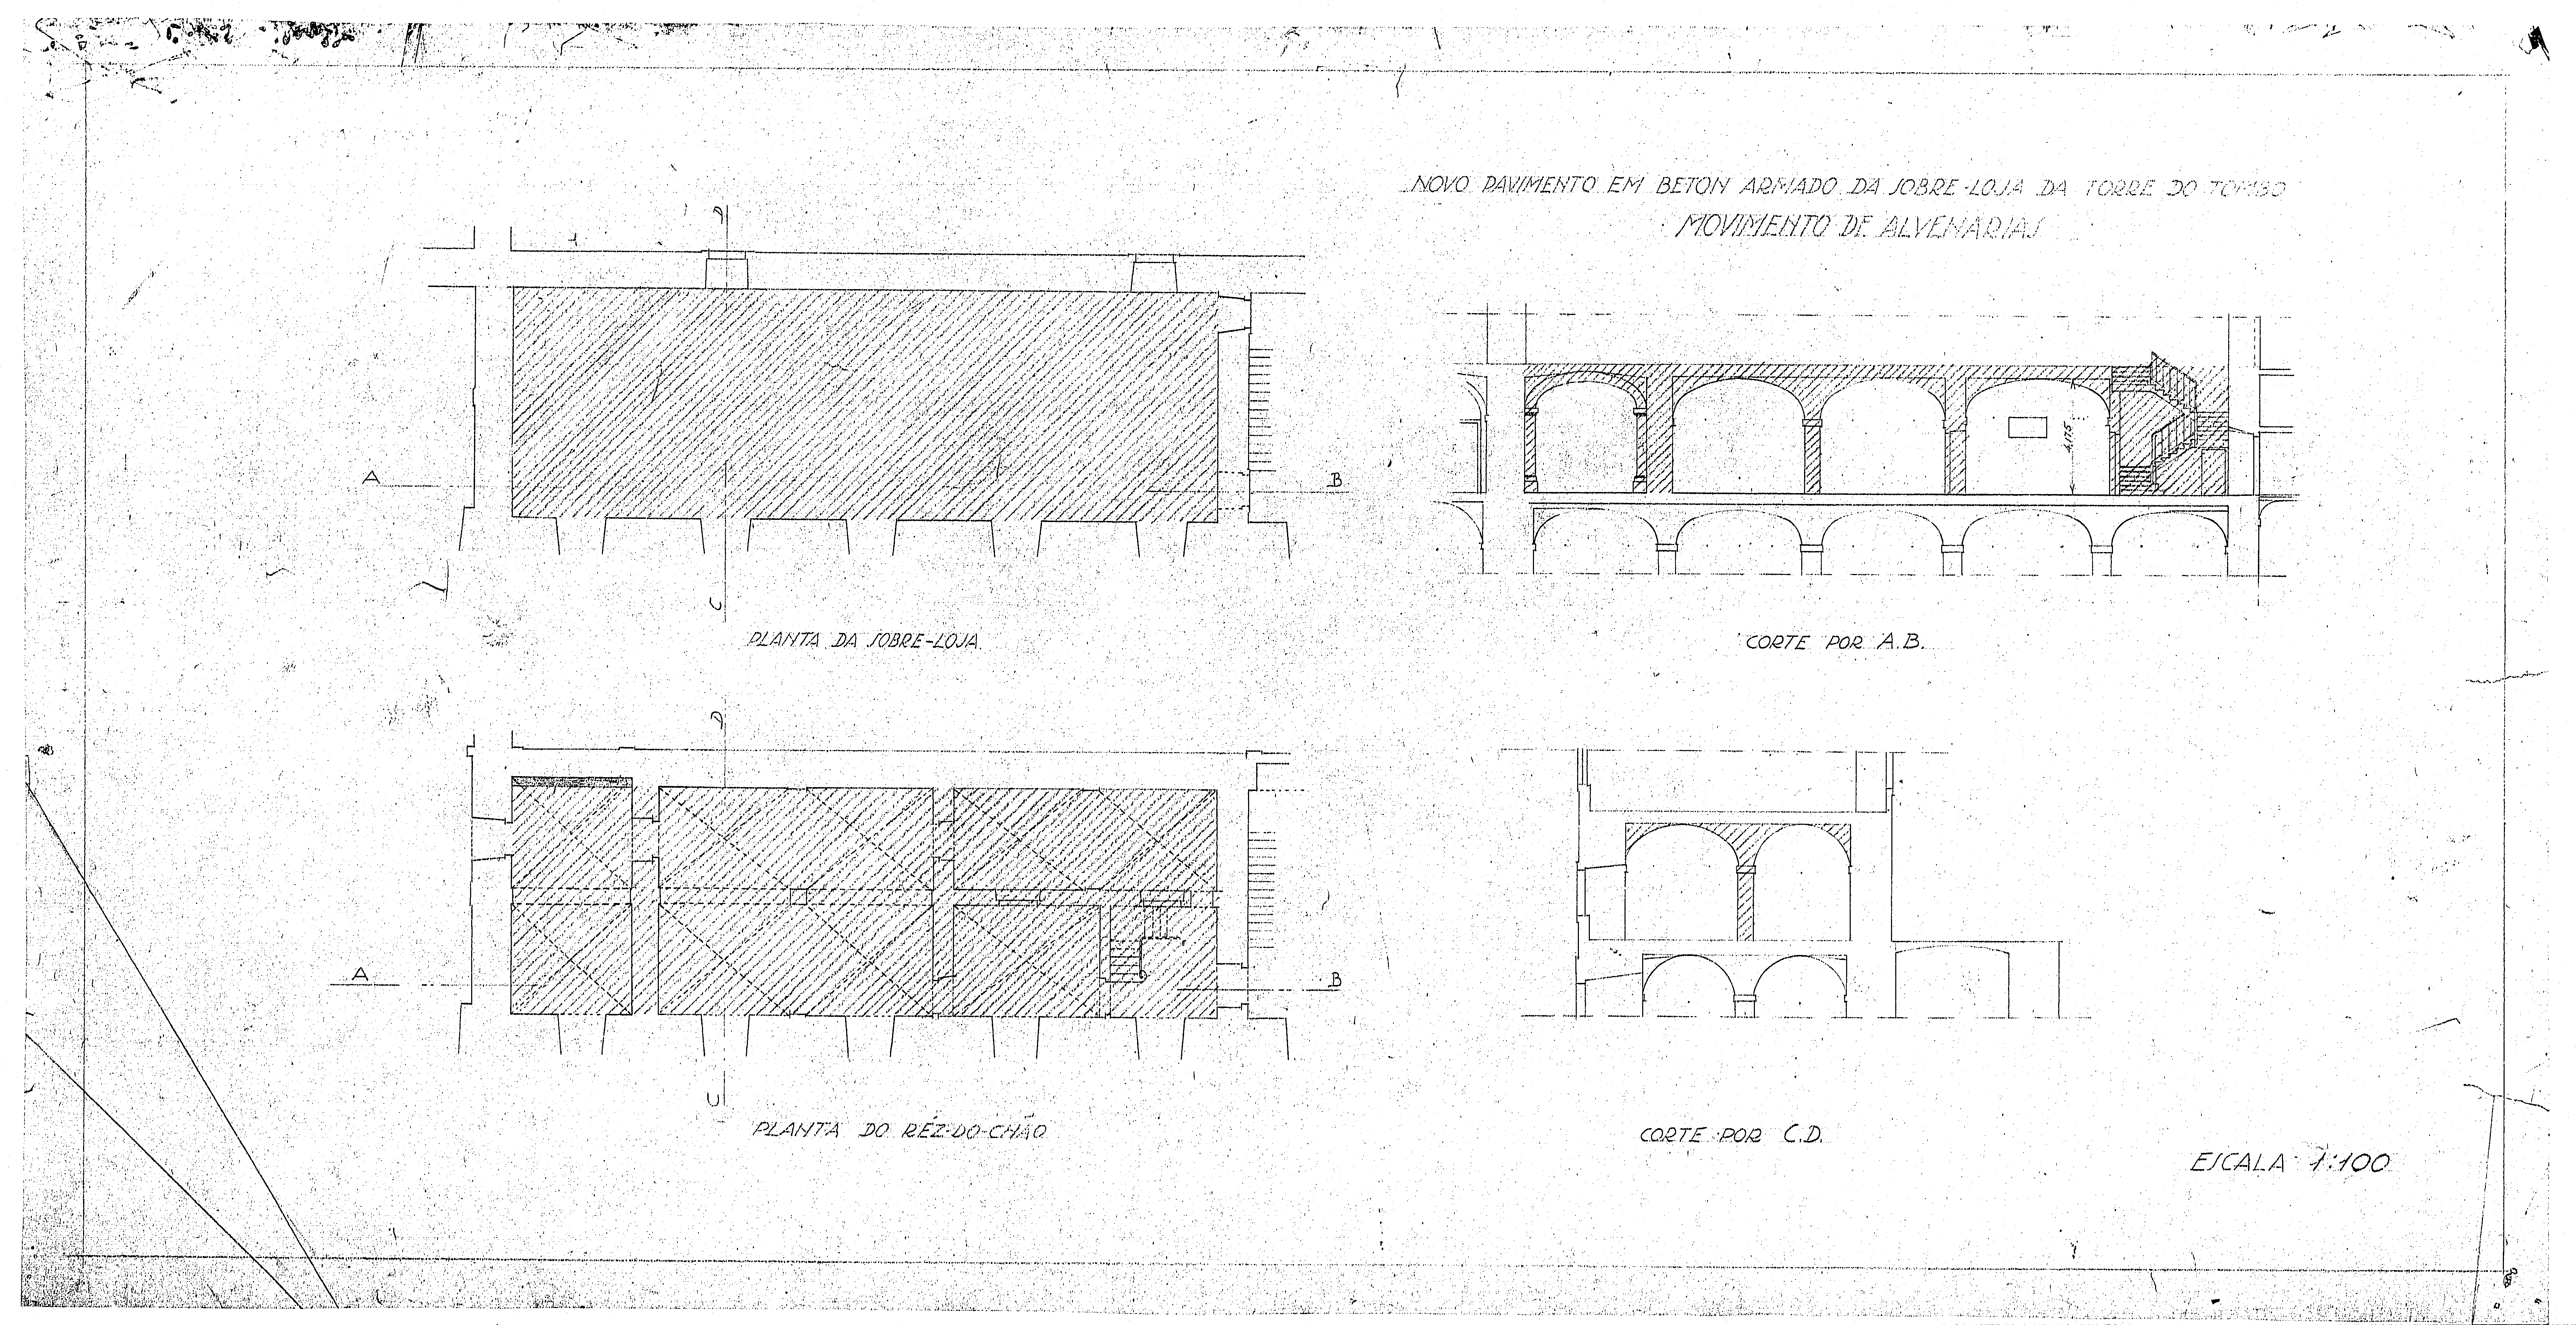 Plantas e cortes do projeto para novo pavimento em betão armado da sobreloja da Torre do Tombo, com indicação do movimento de alvenarias